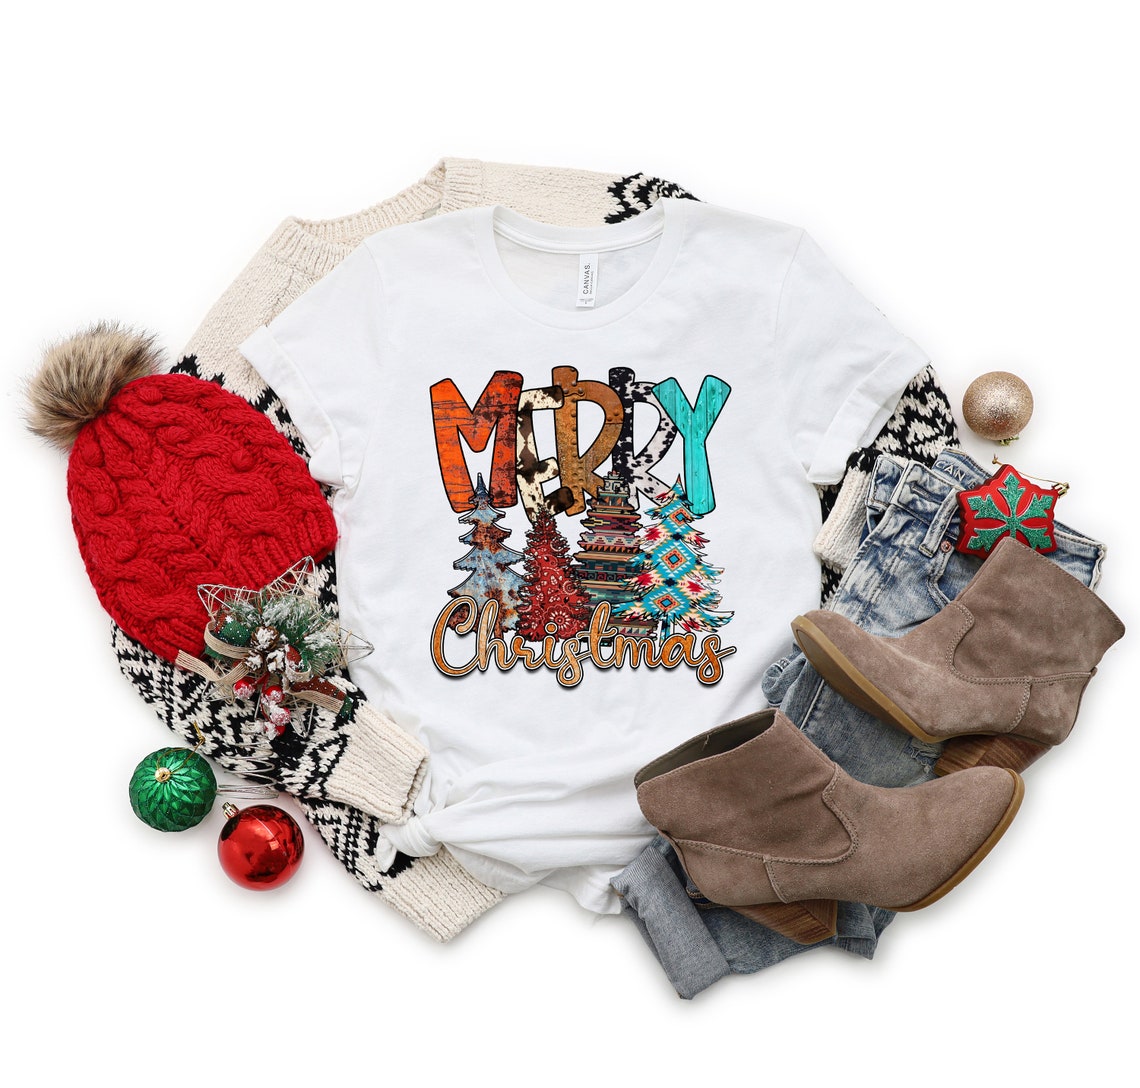 Christmas Women Shirt, Leopard Print Christmas Shirt, Merry Christmas Y'all Shirt, Holiday Shirt, Cute Christmas Tee, Christmas Gift for Her